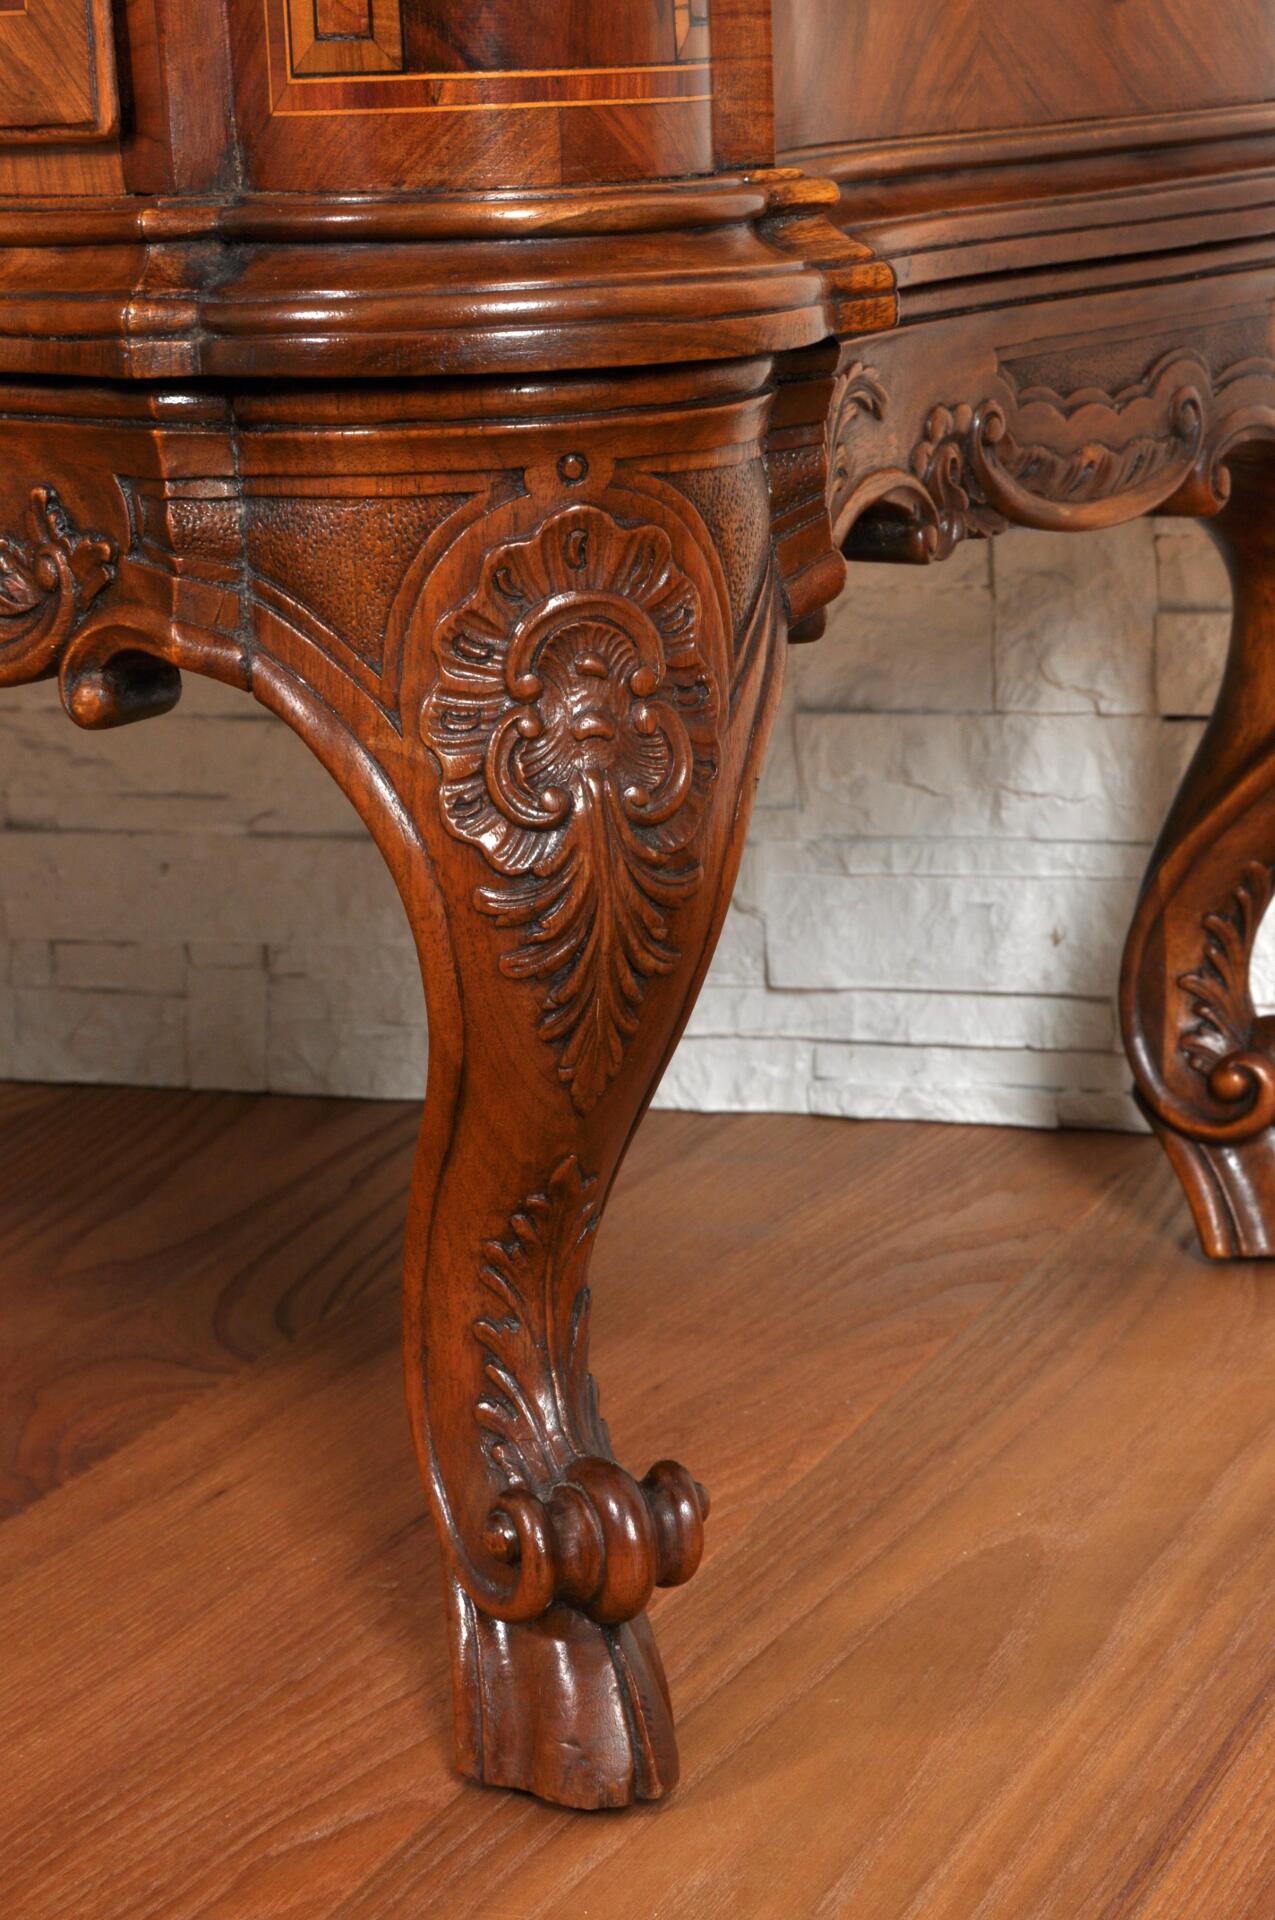 gambe sagomate e scolpite in noce massello in stile settecento veneziano lavorazione artigianale dell’ebanisteria veneziana del XVIII secolo